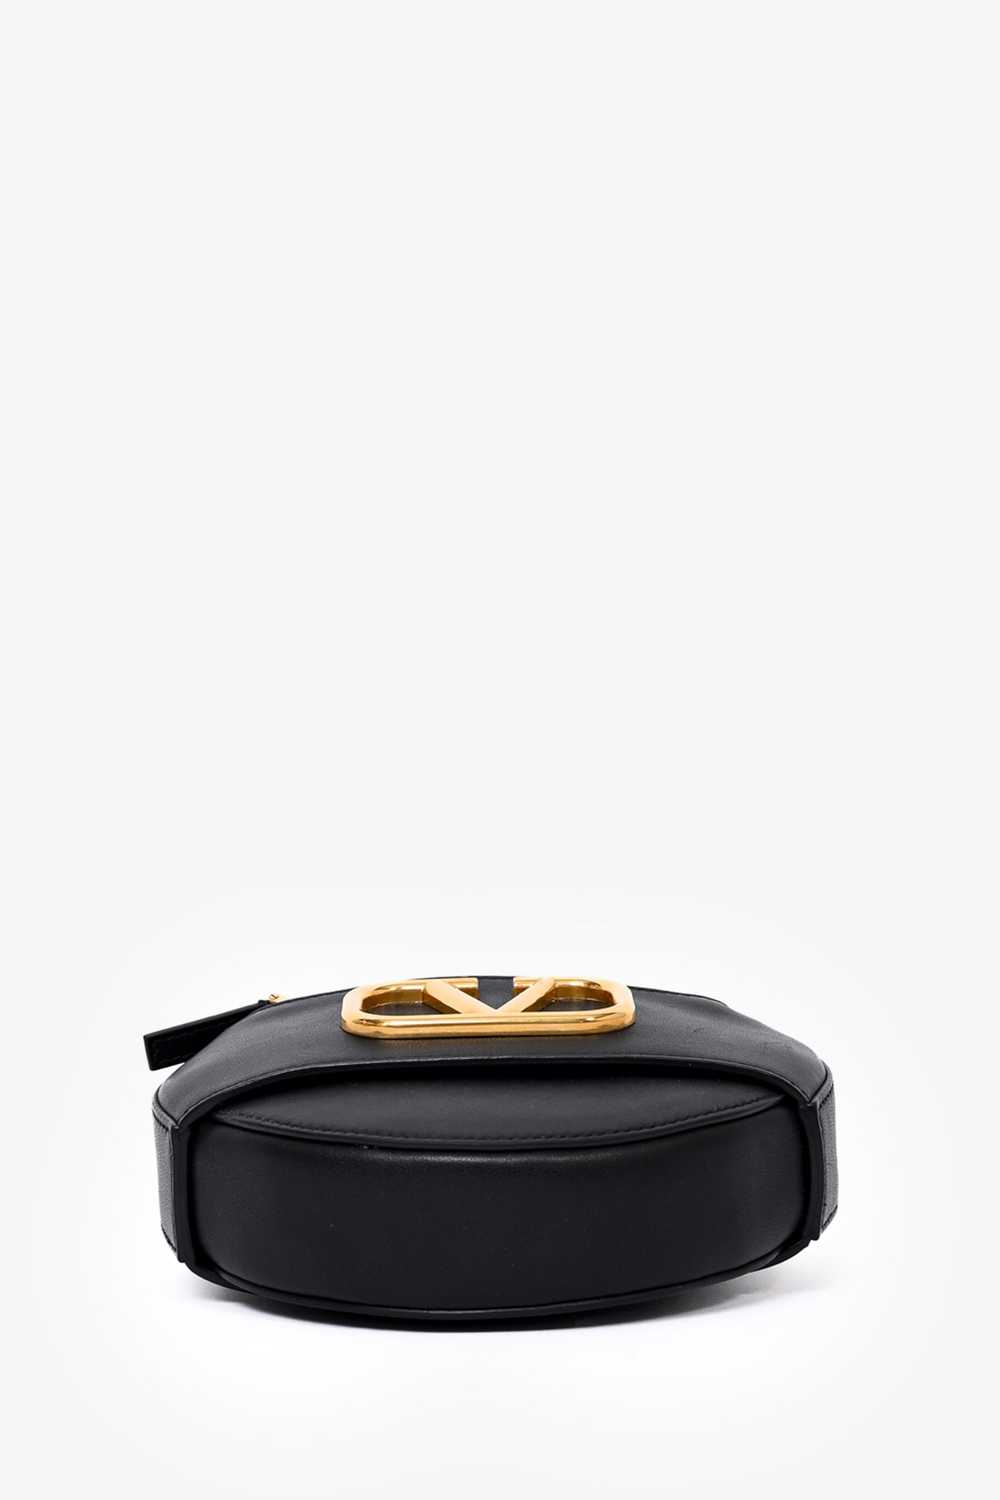 Valentino Black Leather Round V-Logo Crossbody Bag - image 9